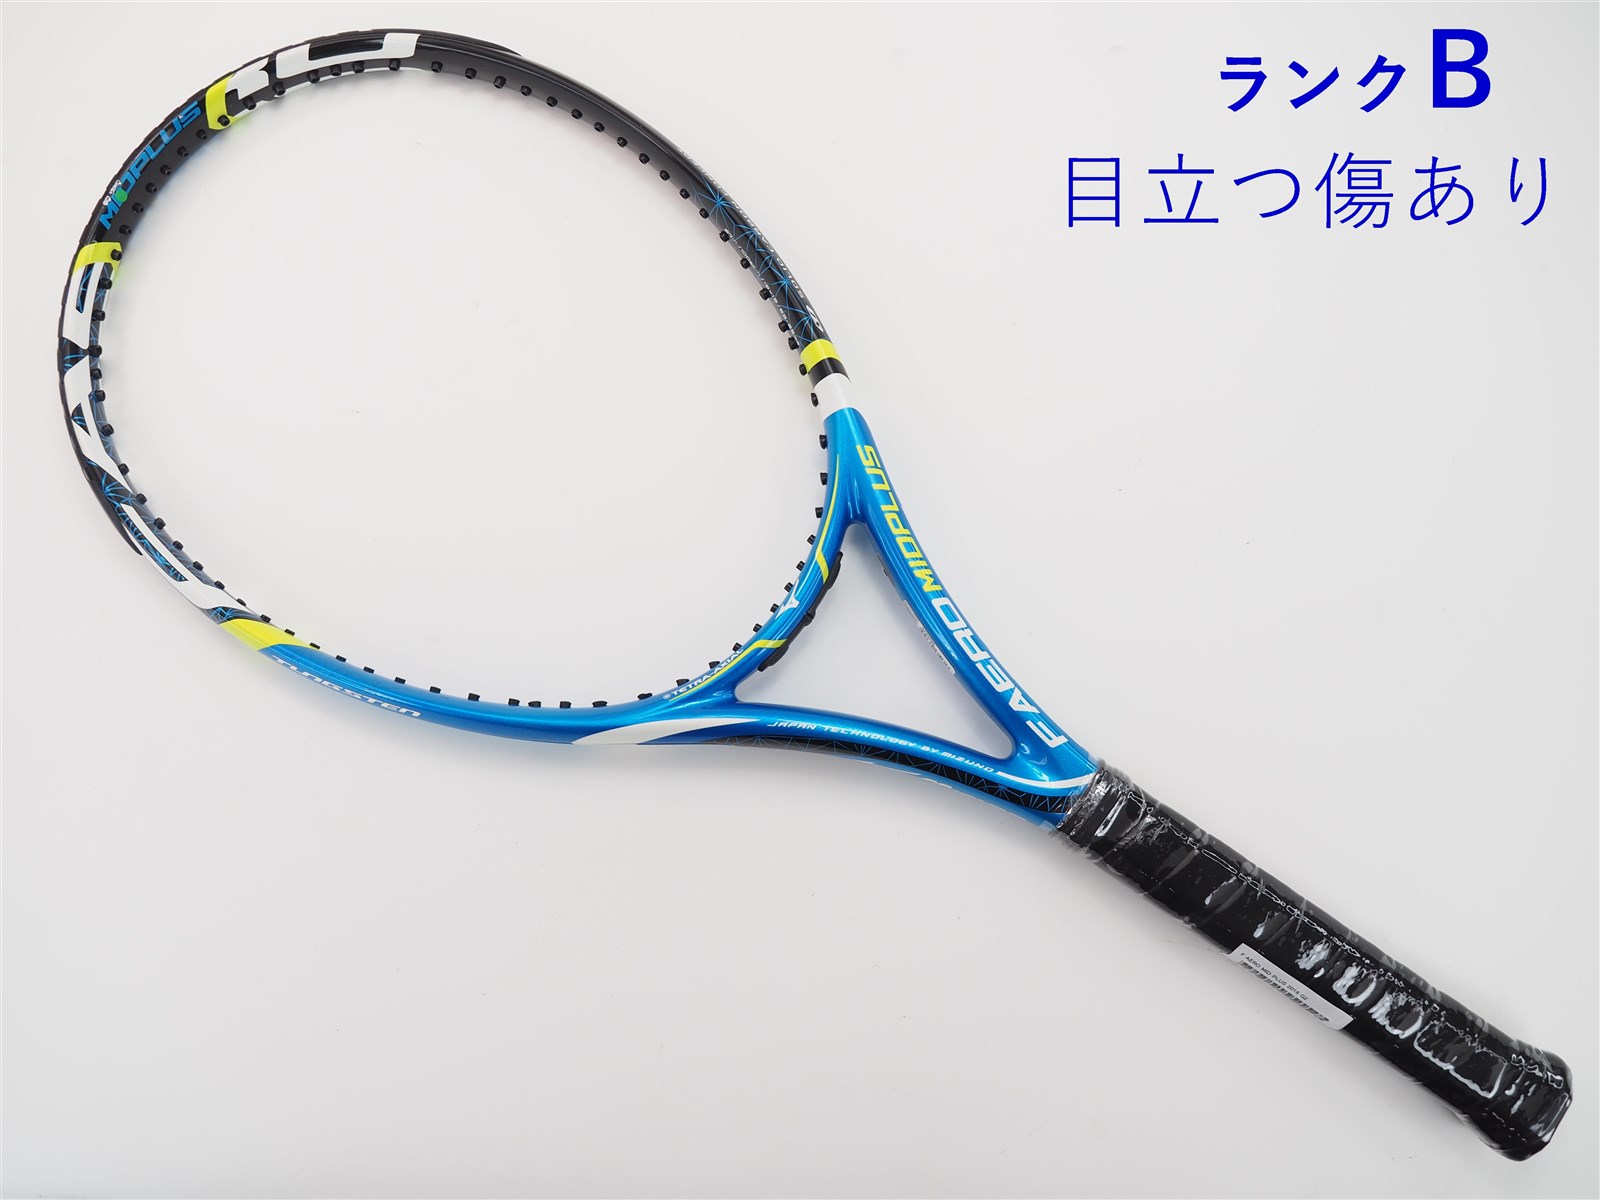 テニスラケット ミズノ エフ エアロ ミッドプラス 2016年モデル (G2)MIZUNO F AERO MID PLUS 2016